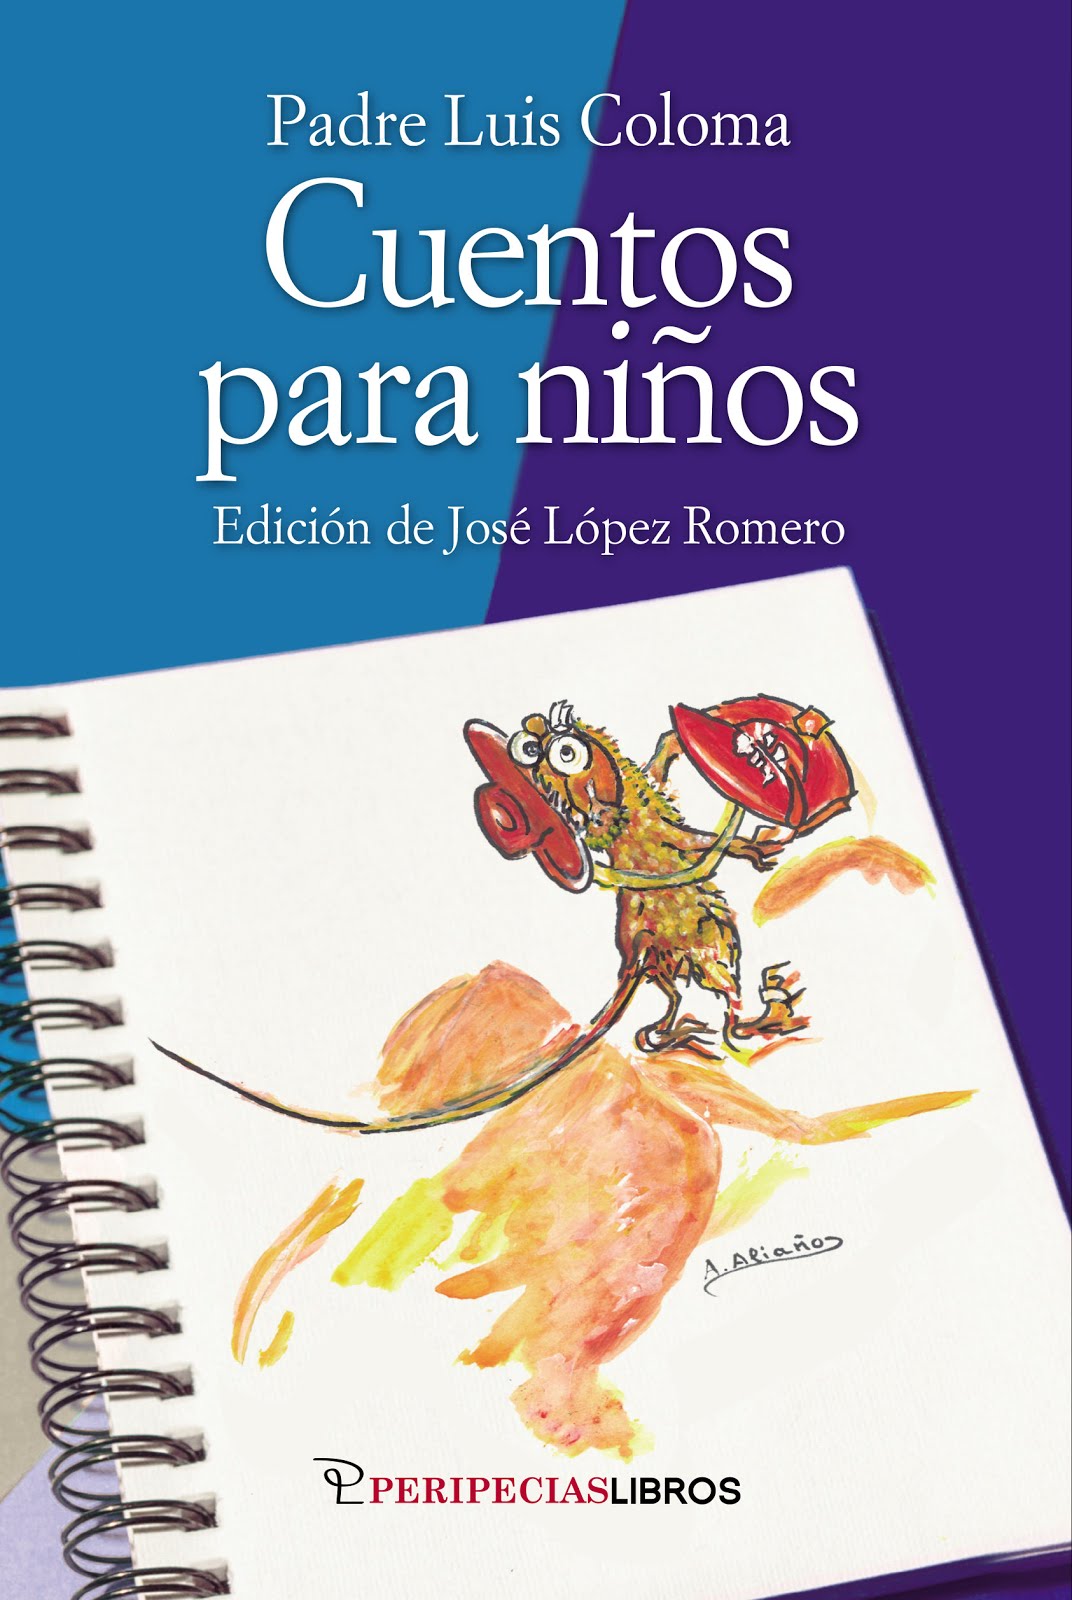 Edición de los "Cuentos para niños" de Luis Coloma